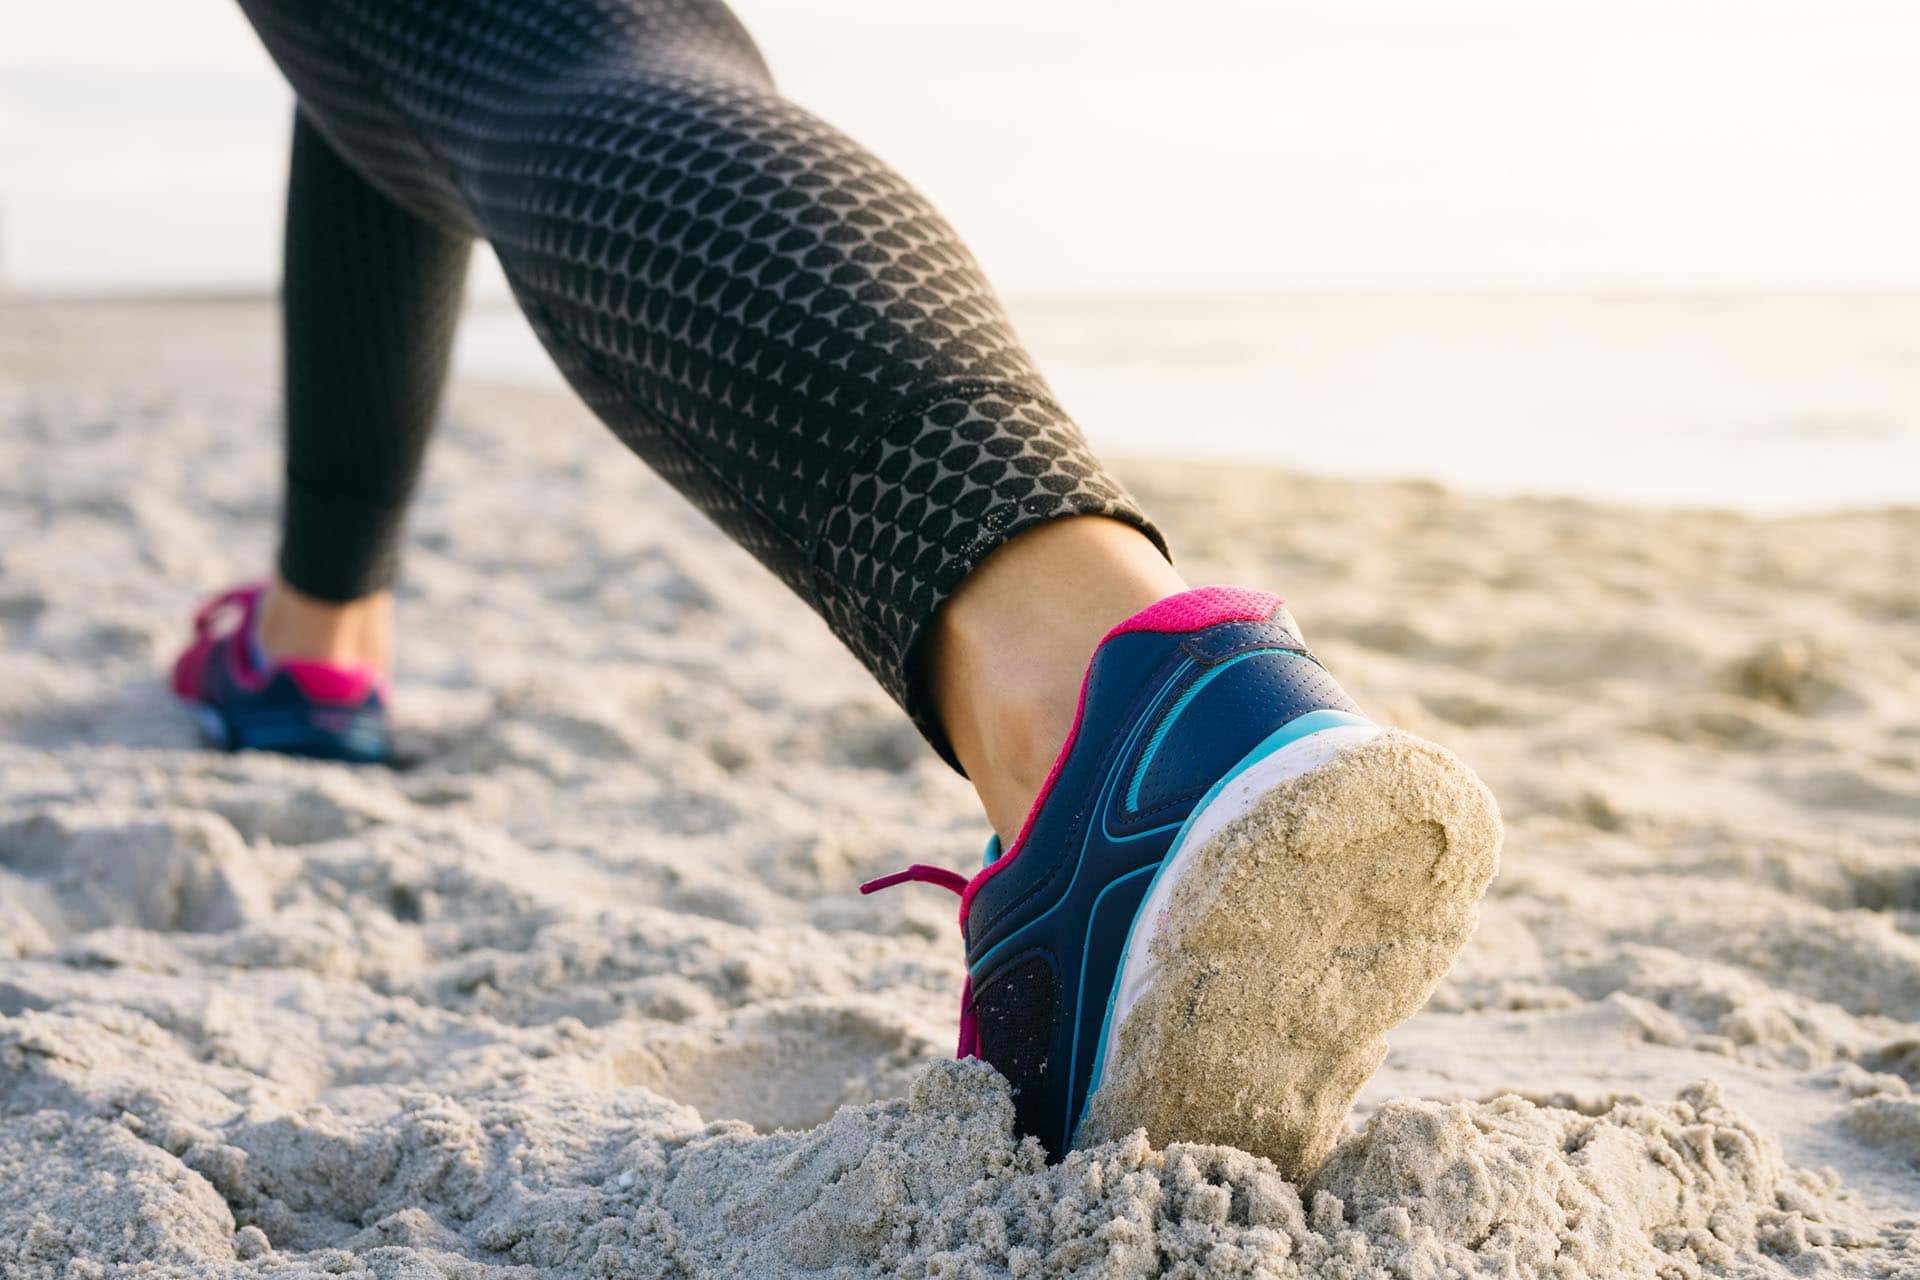 Løping i sanden kan være fin trening i ferien